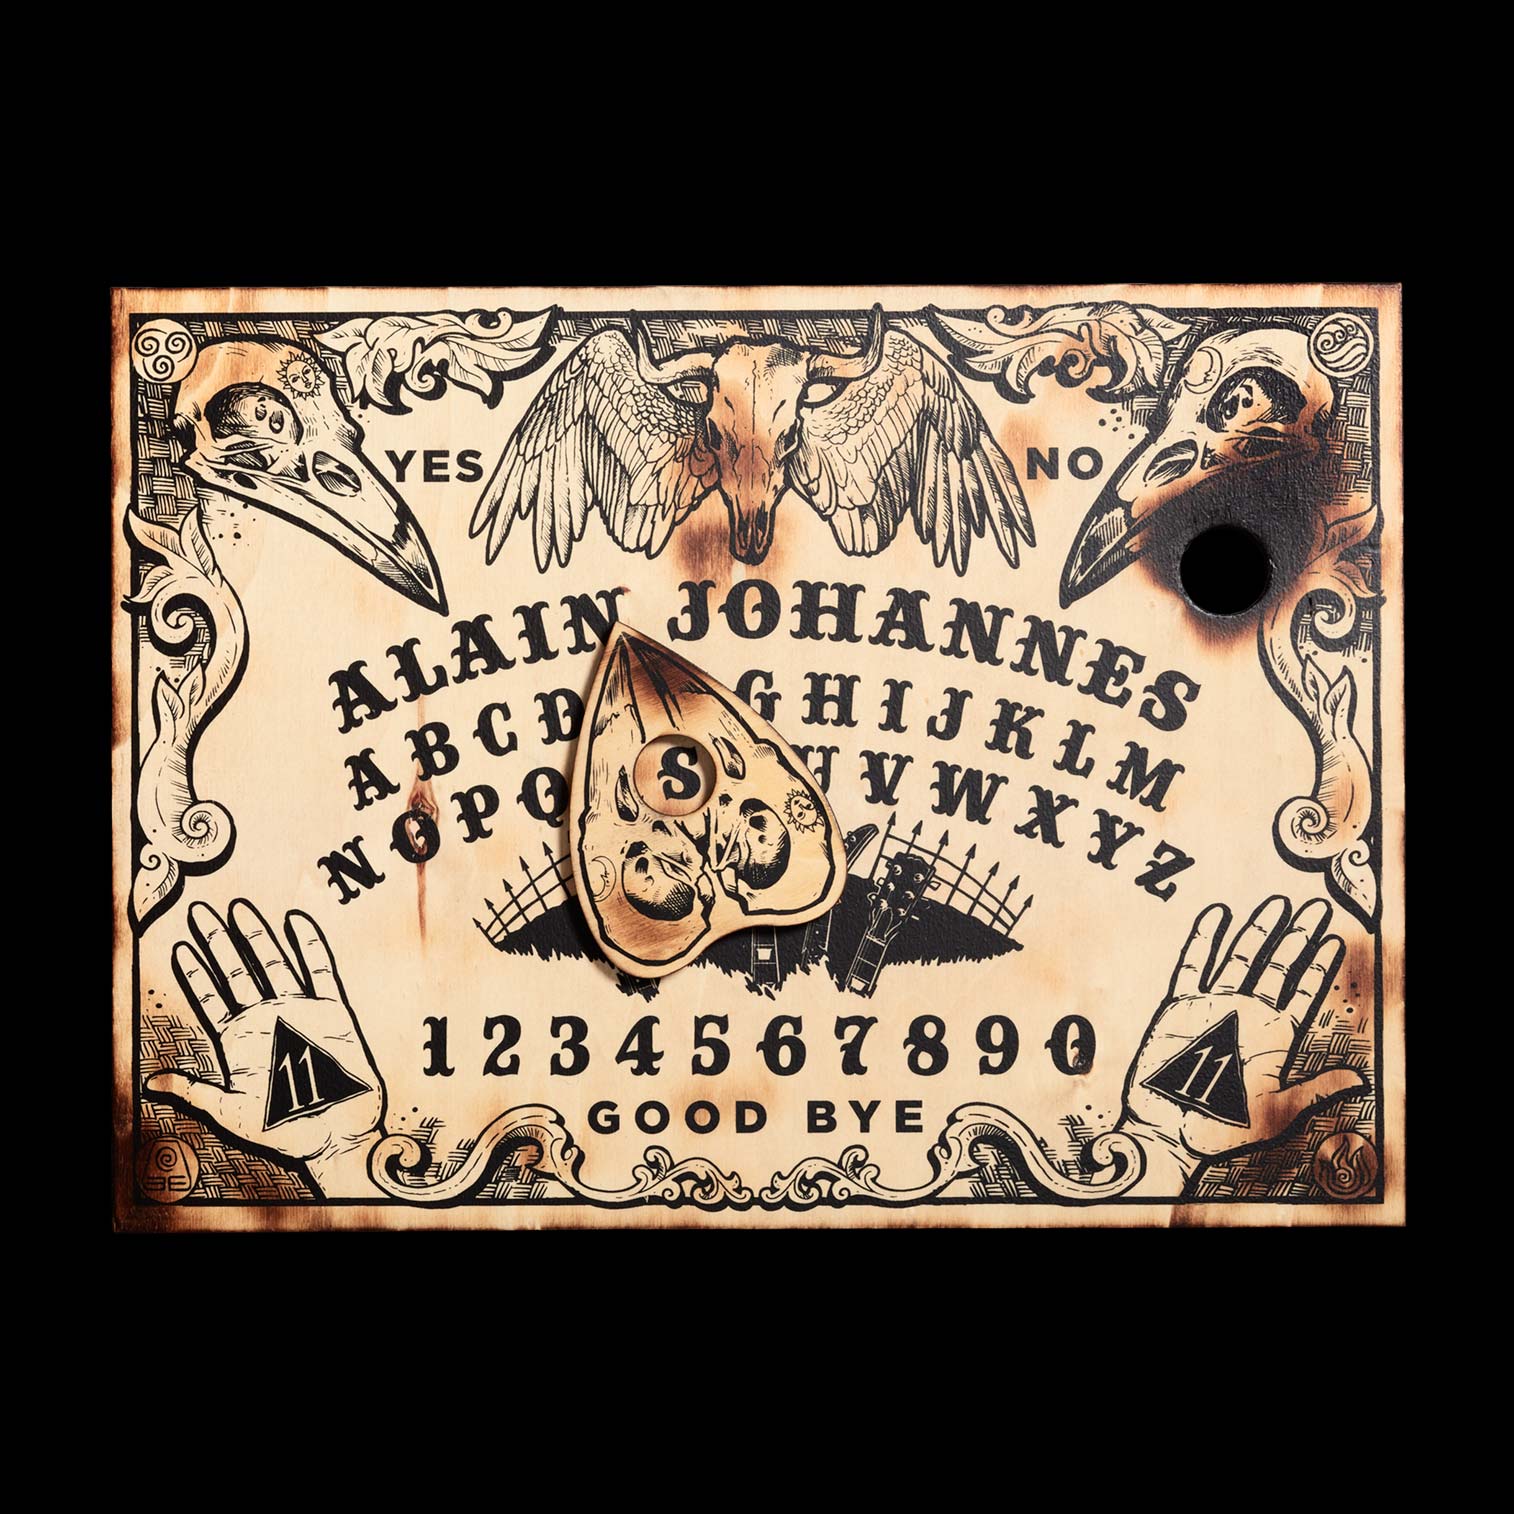 Original Ouija Board Design